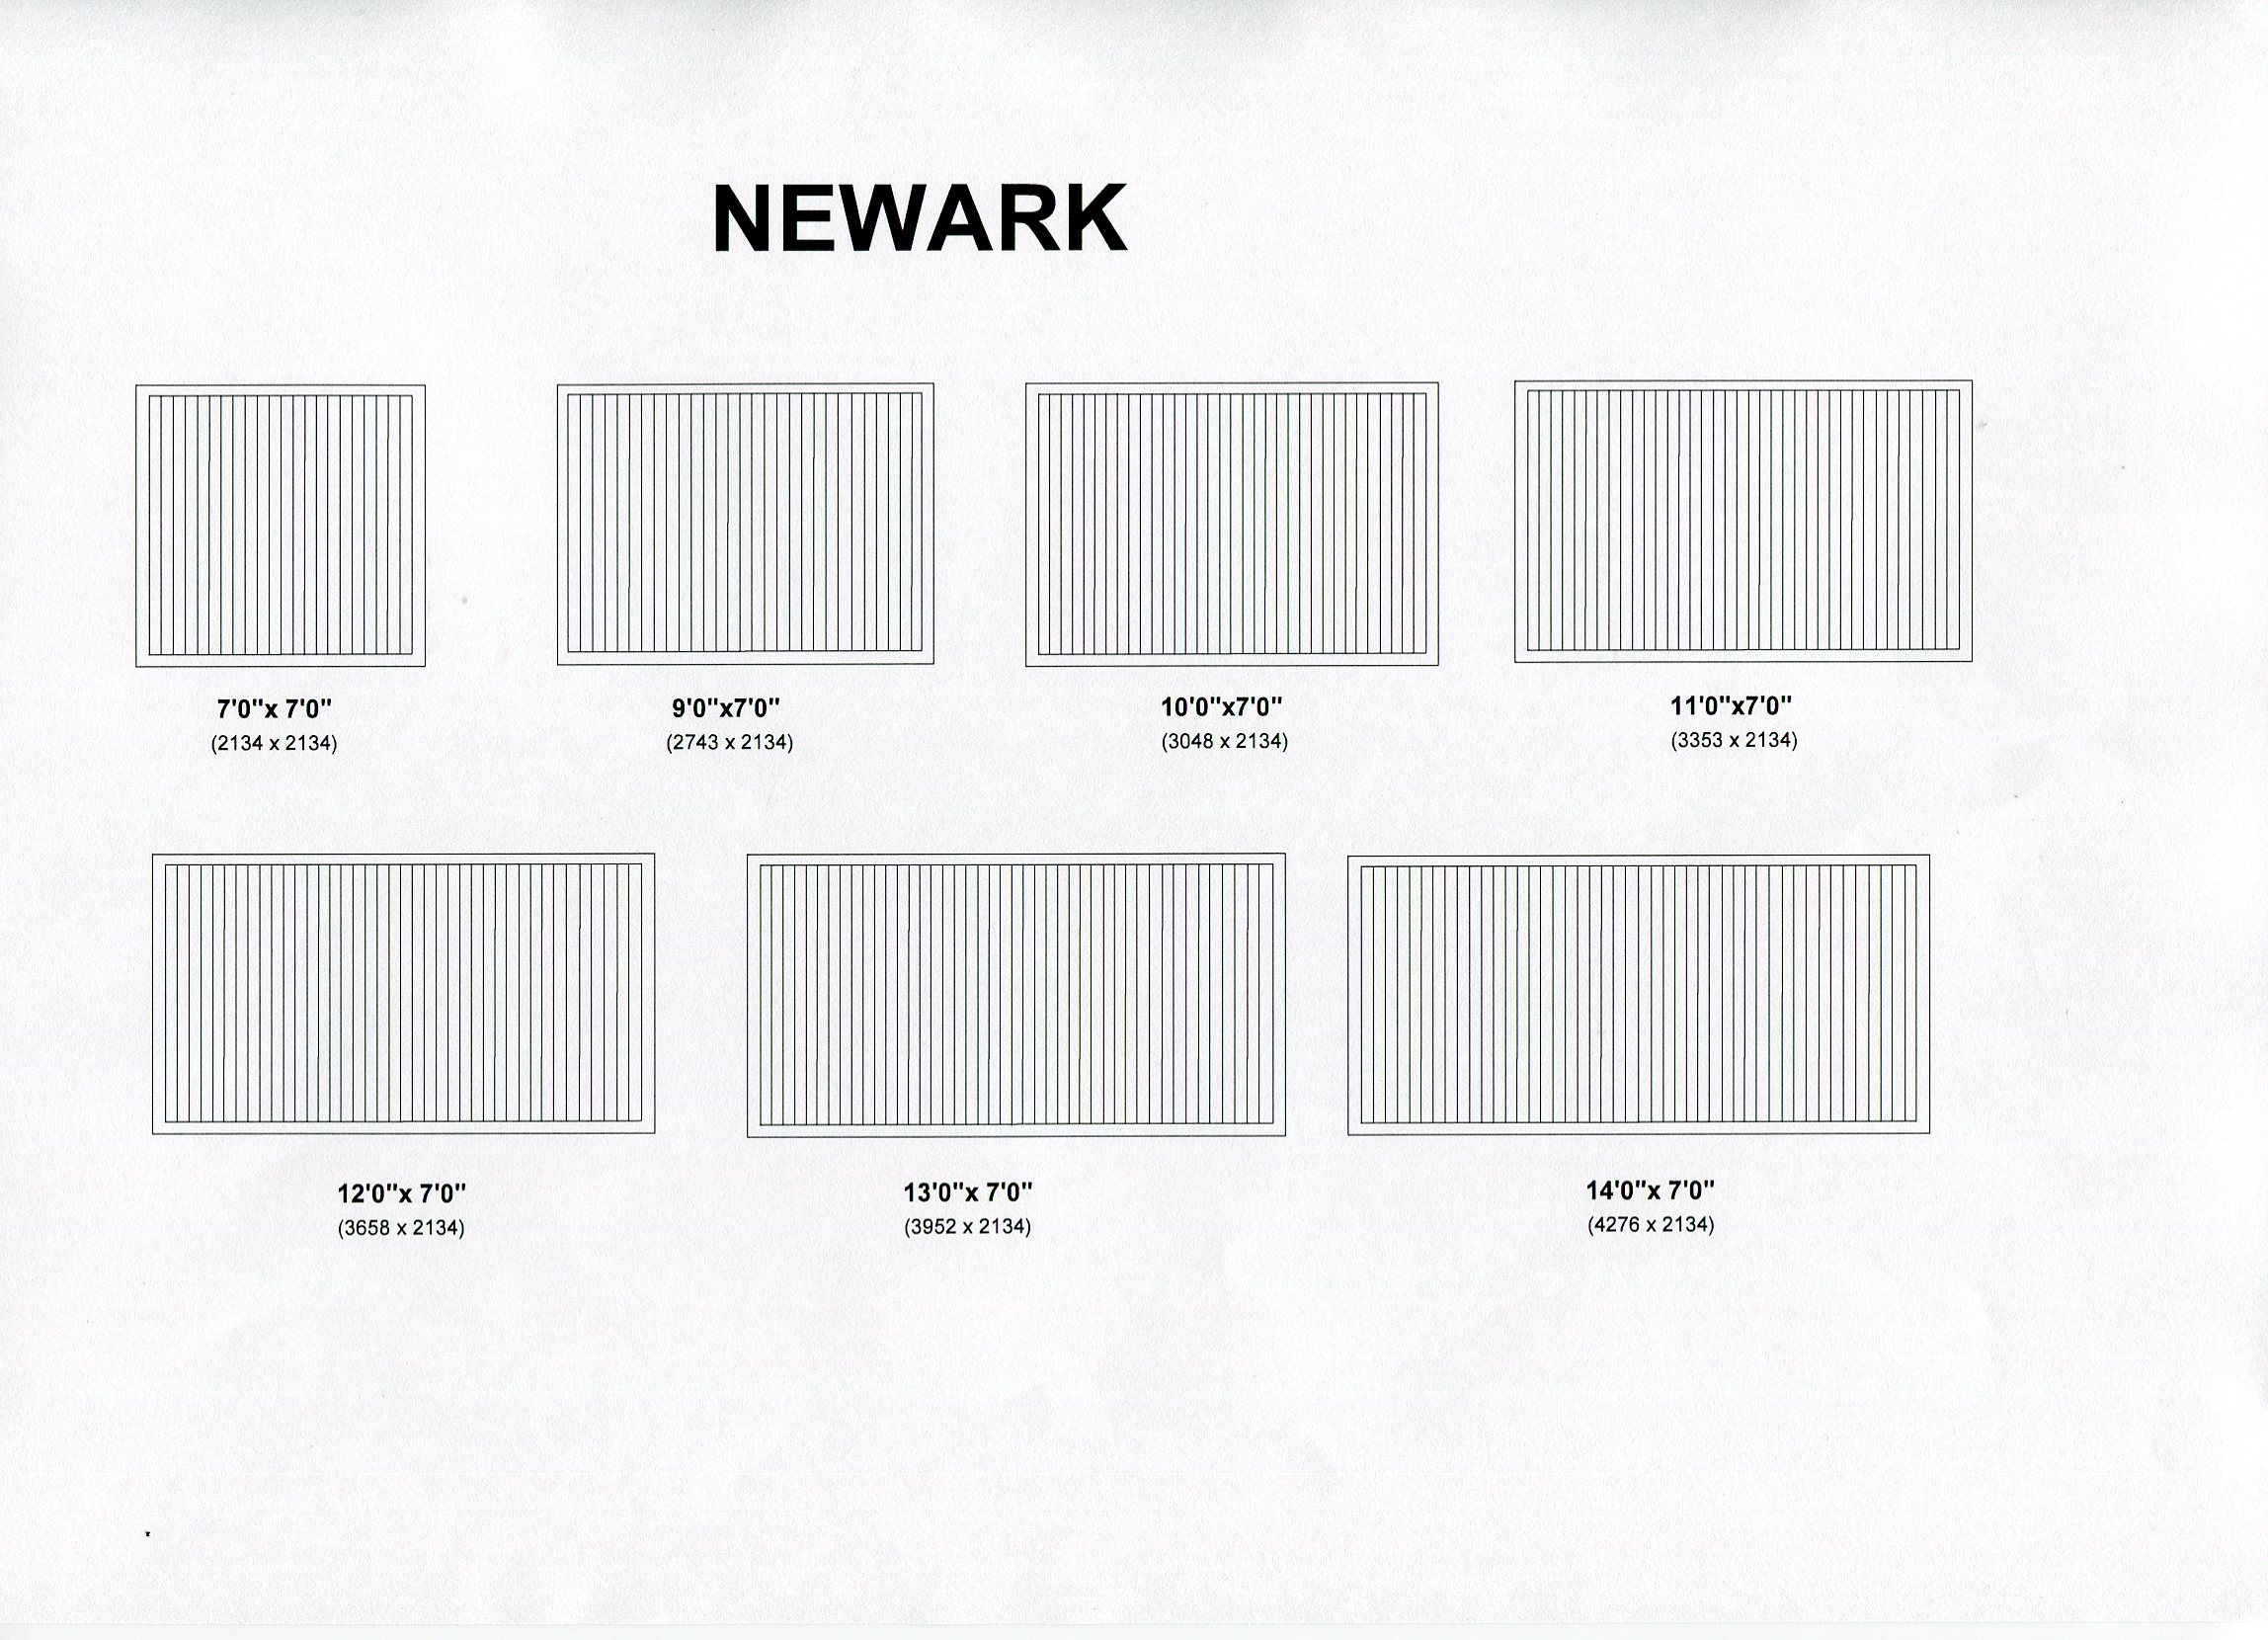 Cedar Door Newark design options